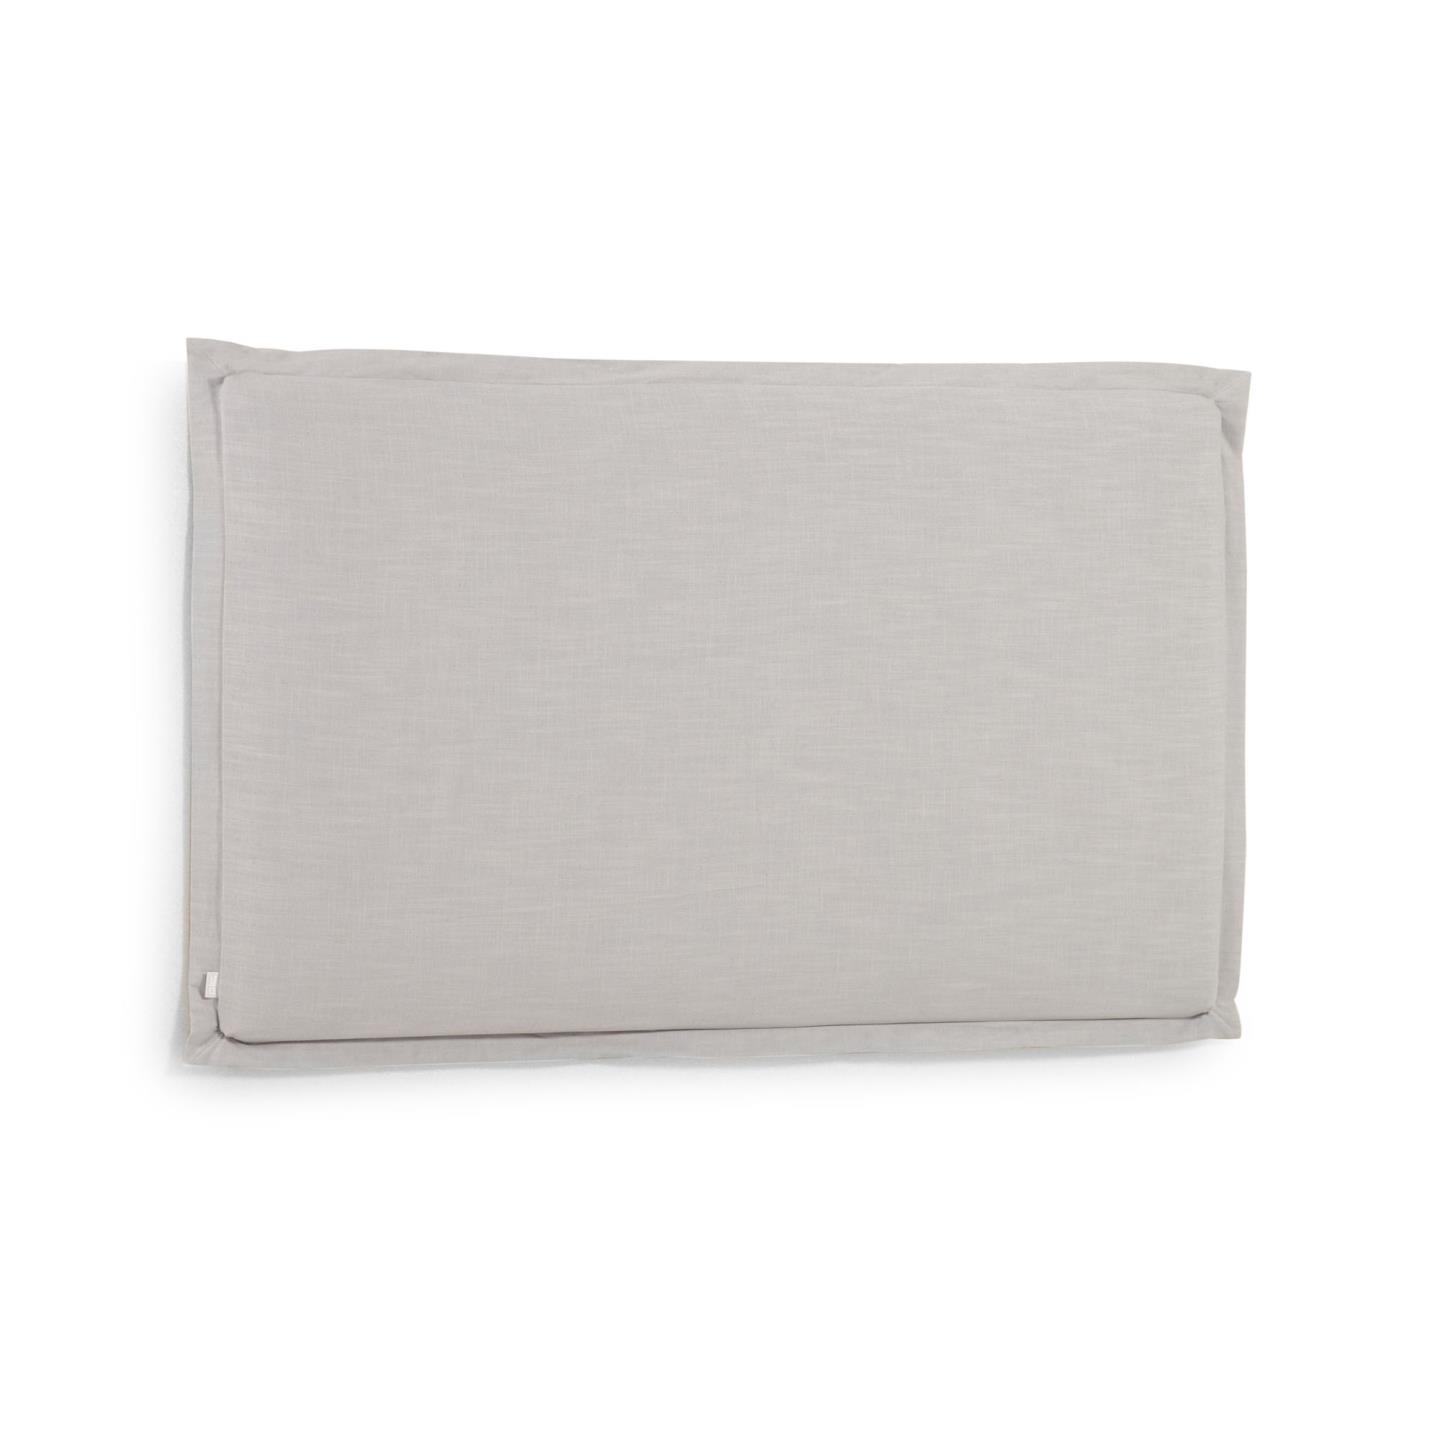 Изголовье La Forma Tanit из льняной ткани серого цветасо съемным чехлом 186 x 106 см